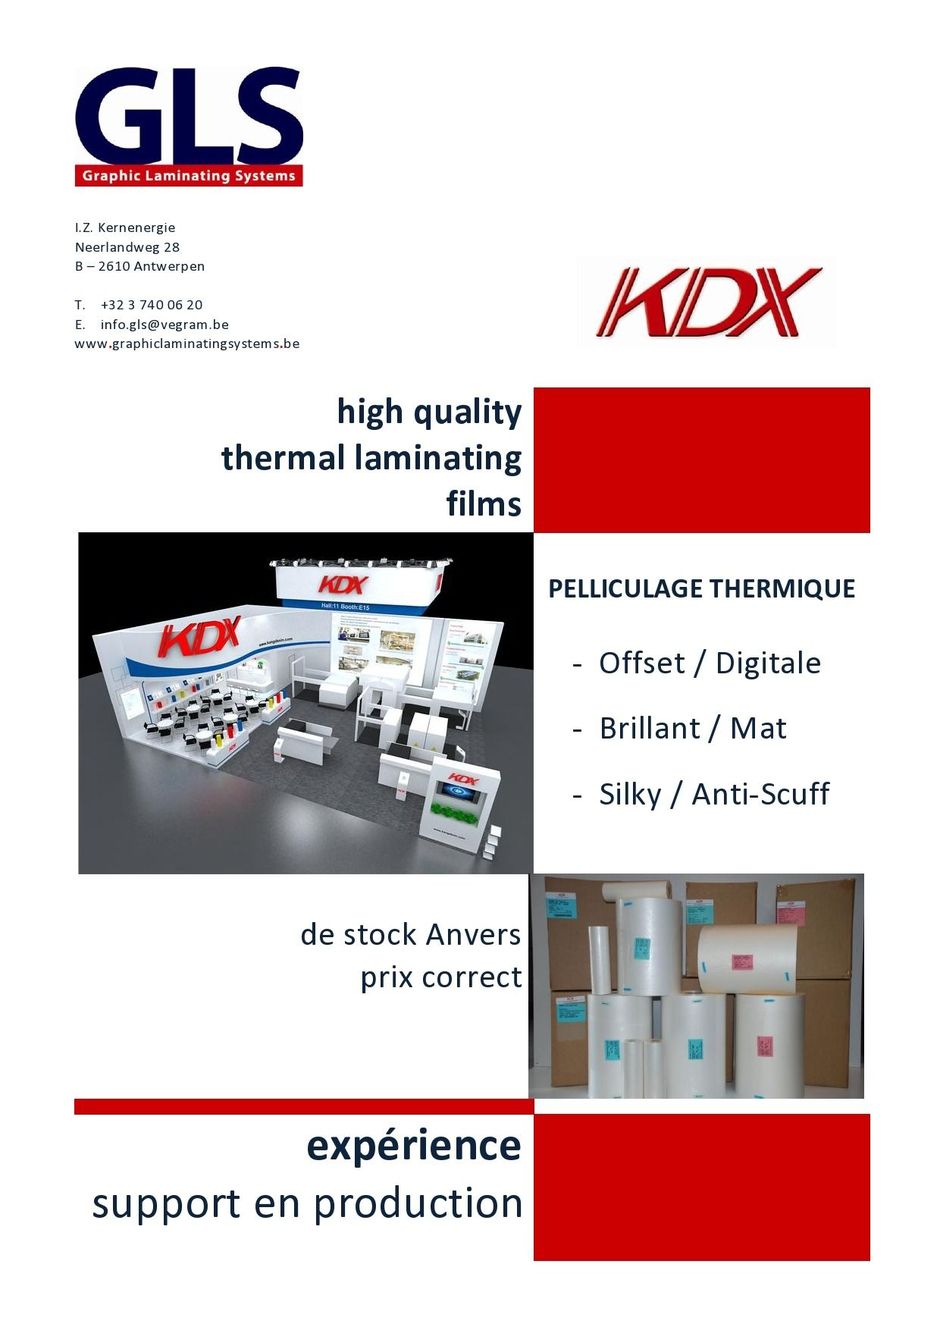 GLS fournit films de pelliculage thermique KDX de première qualité